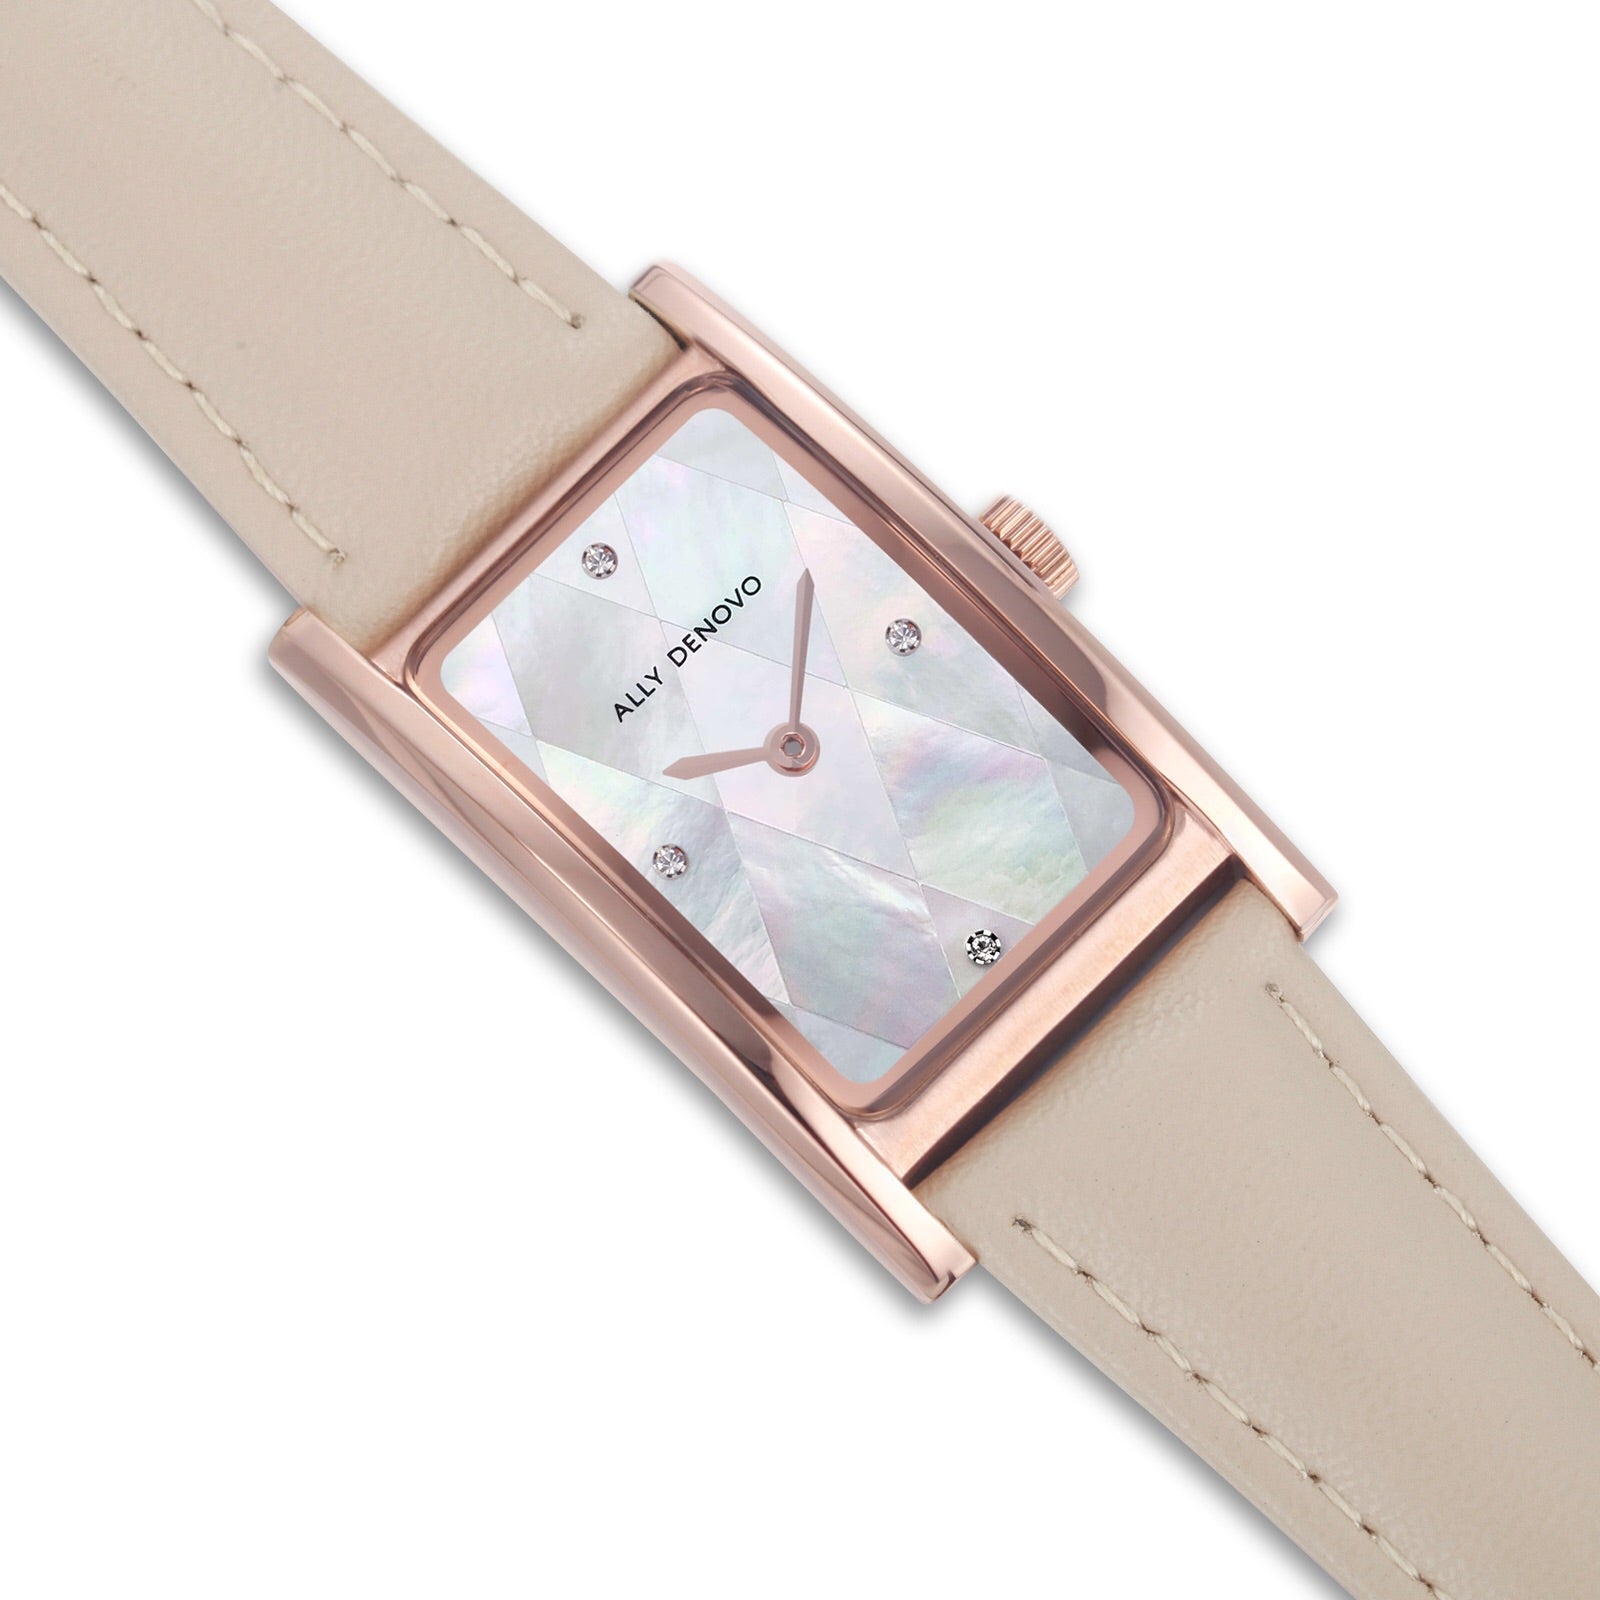 【限量頂級方形琉璃錶鍊禮盒】-風衣卡其色玫瑰金框手錶 限時贈送 銀製手鍊